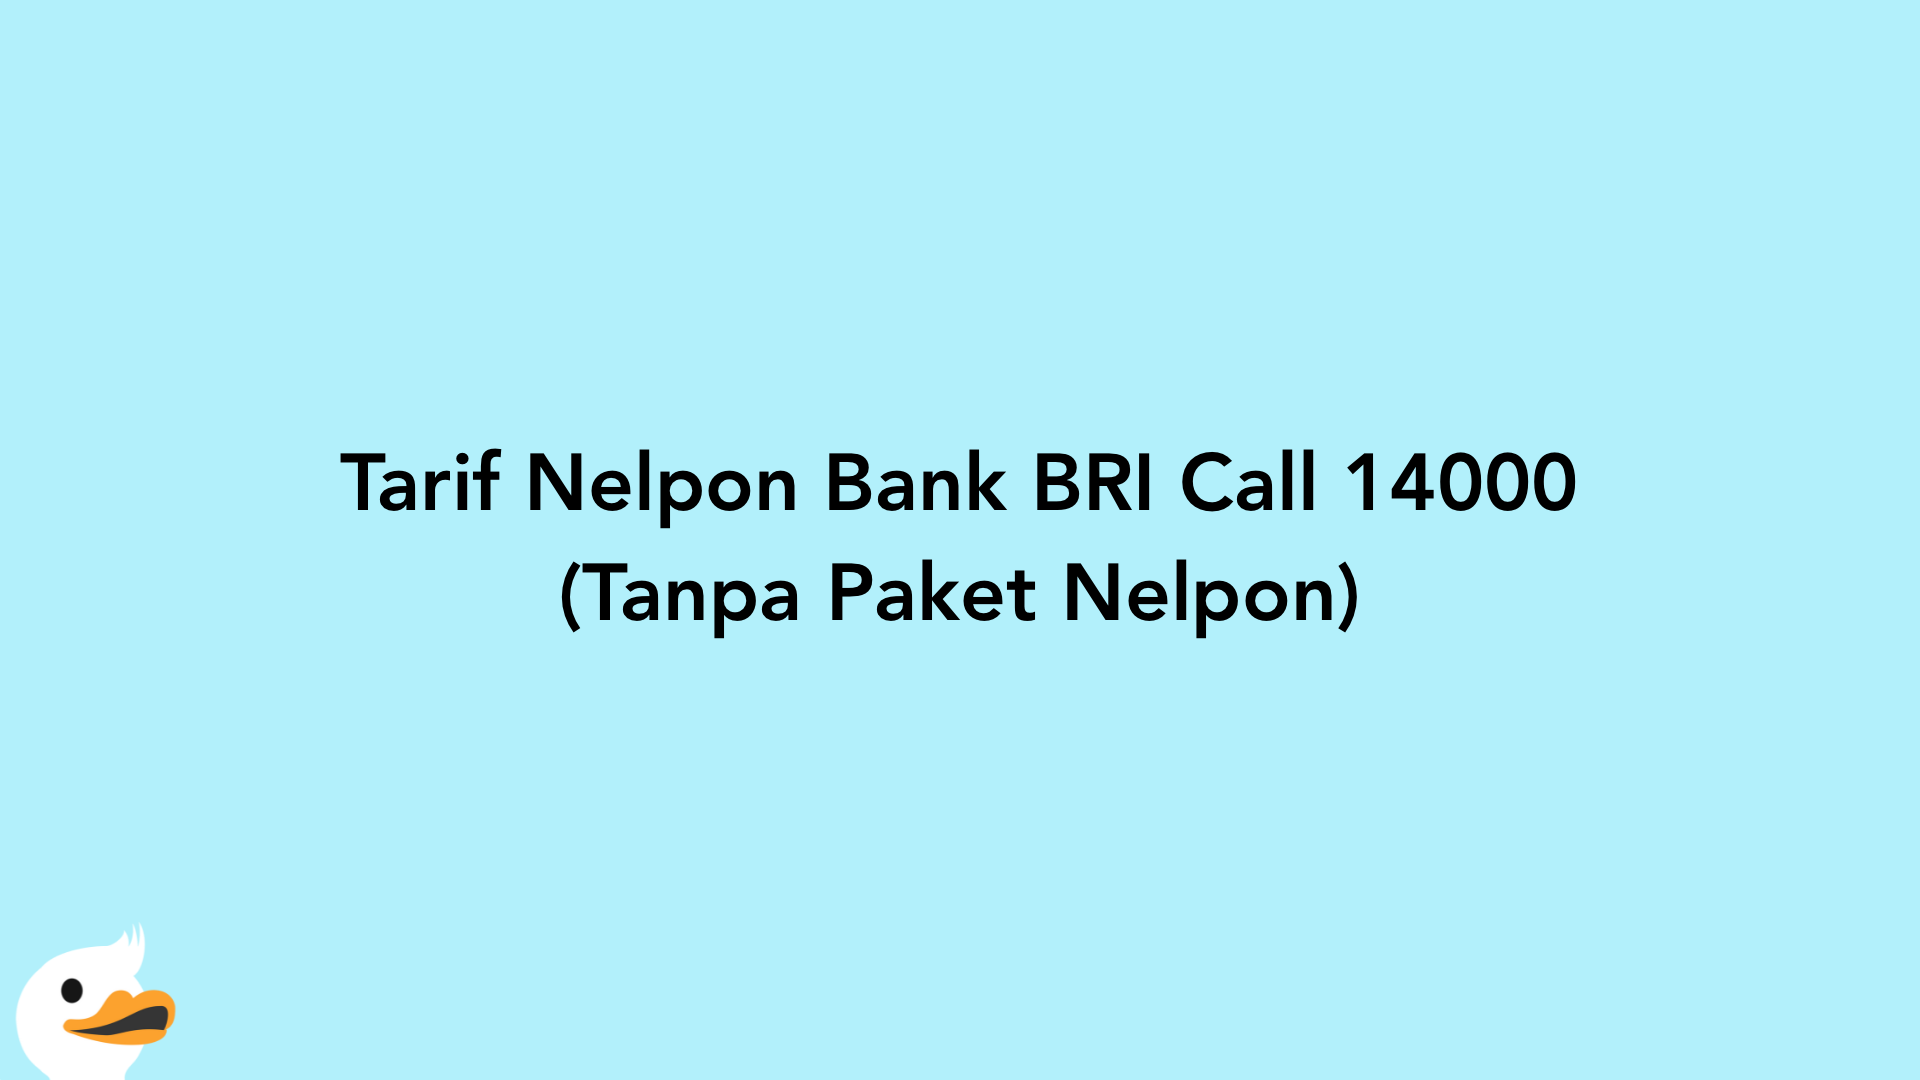 Tarif Nelpon Bank BRI Call 14000 (Tanpa Paket Nelpon)